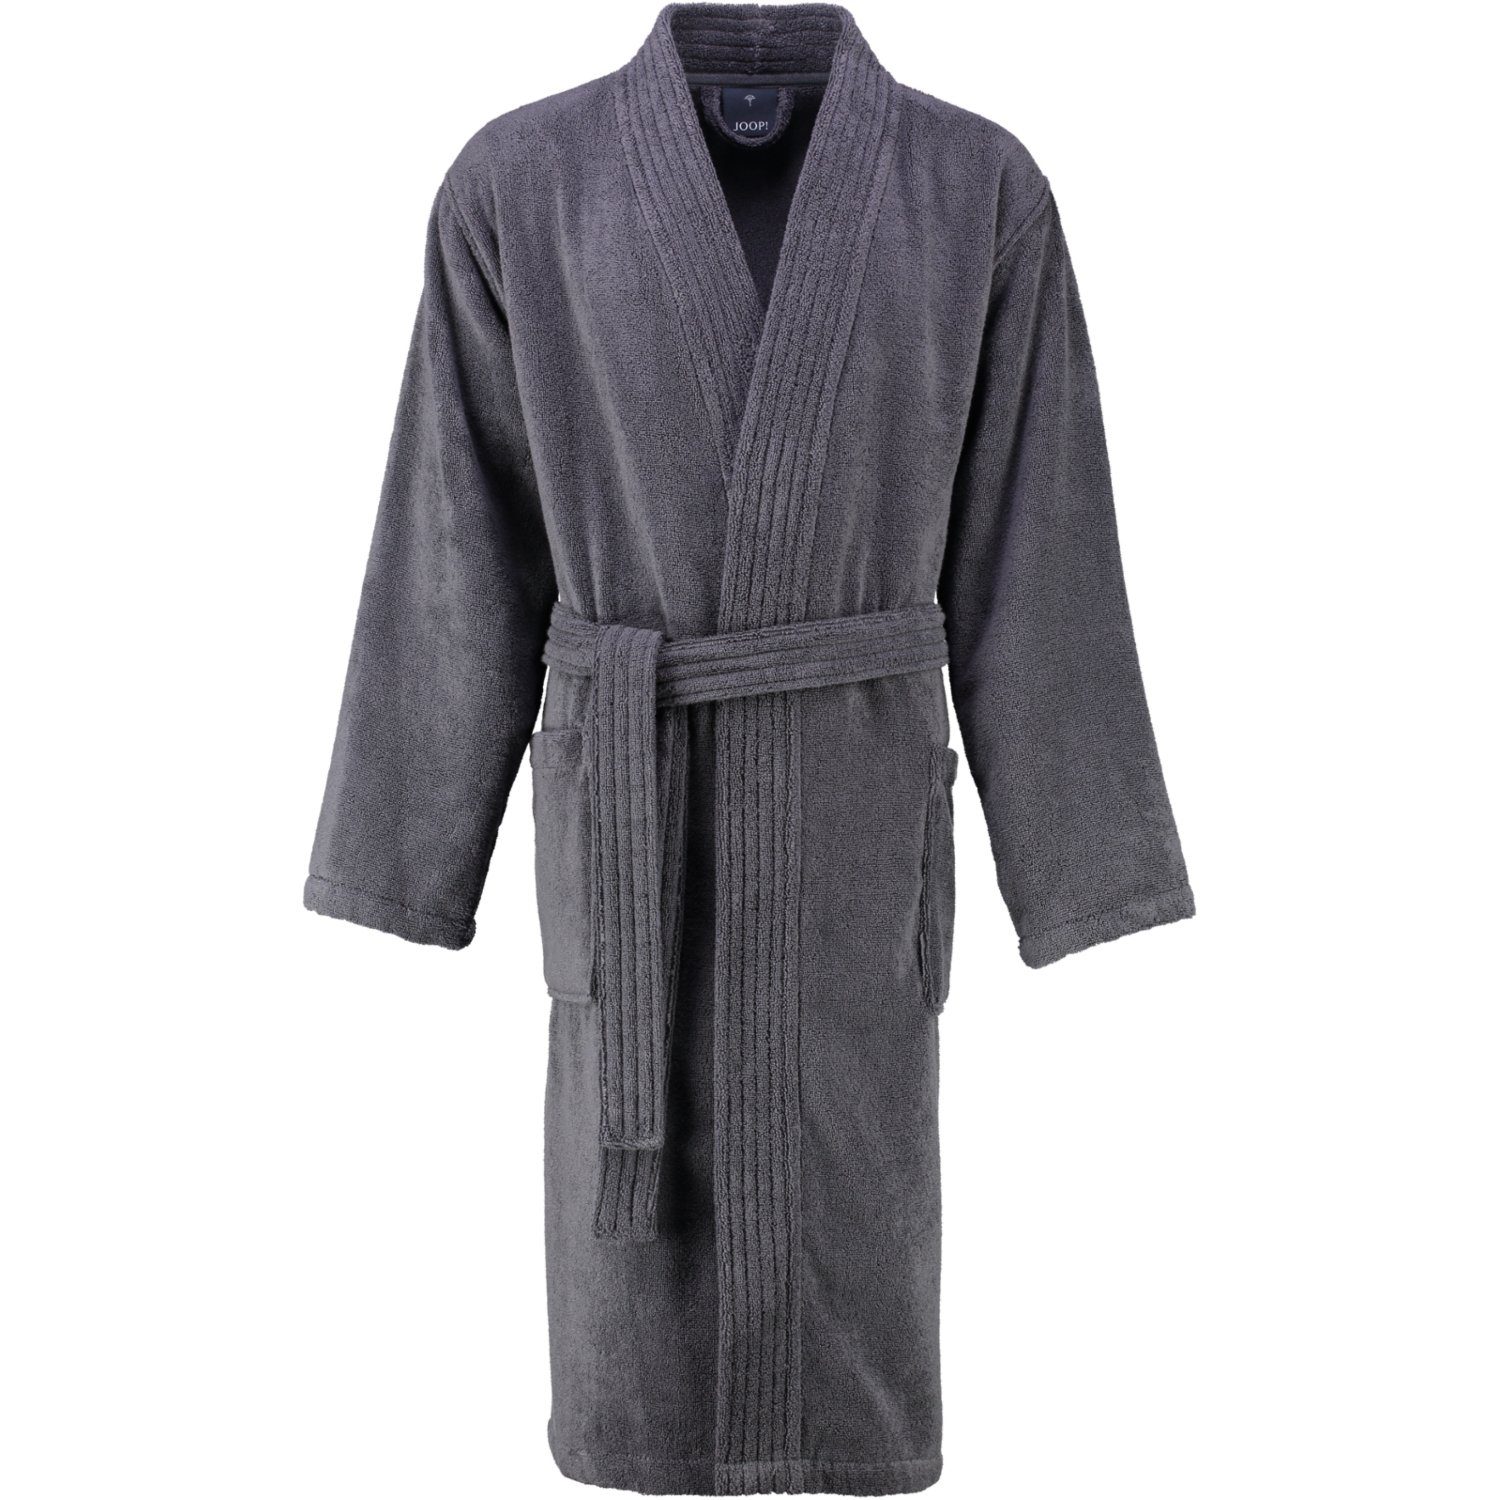 Joop! Herrenbademantel 1647 Kimono Frottier, Kimono, 100% Baumwolle grau